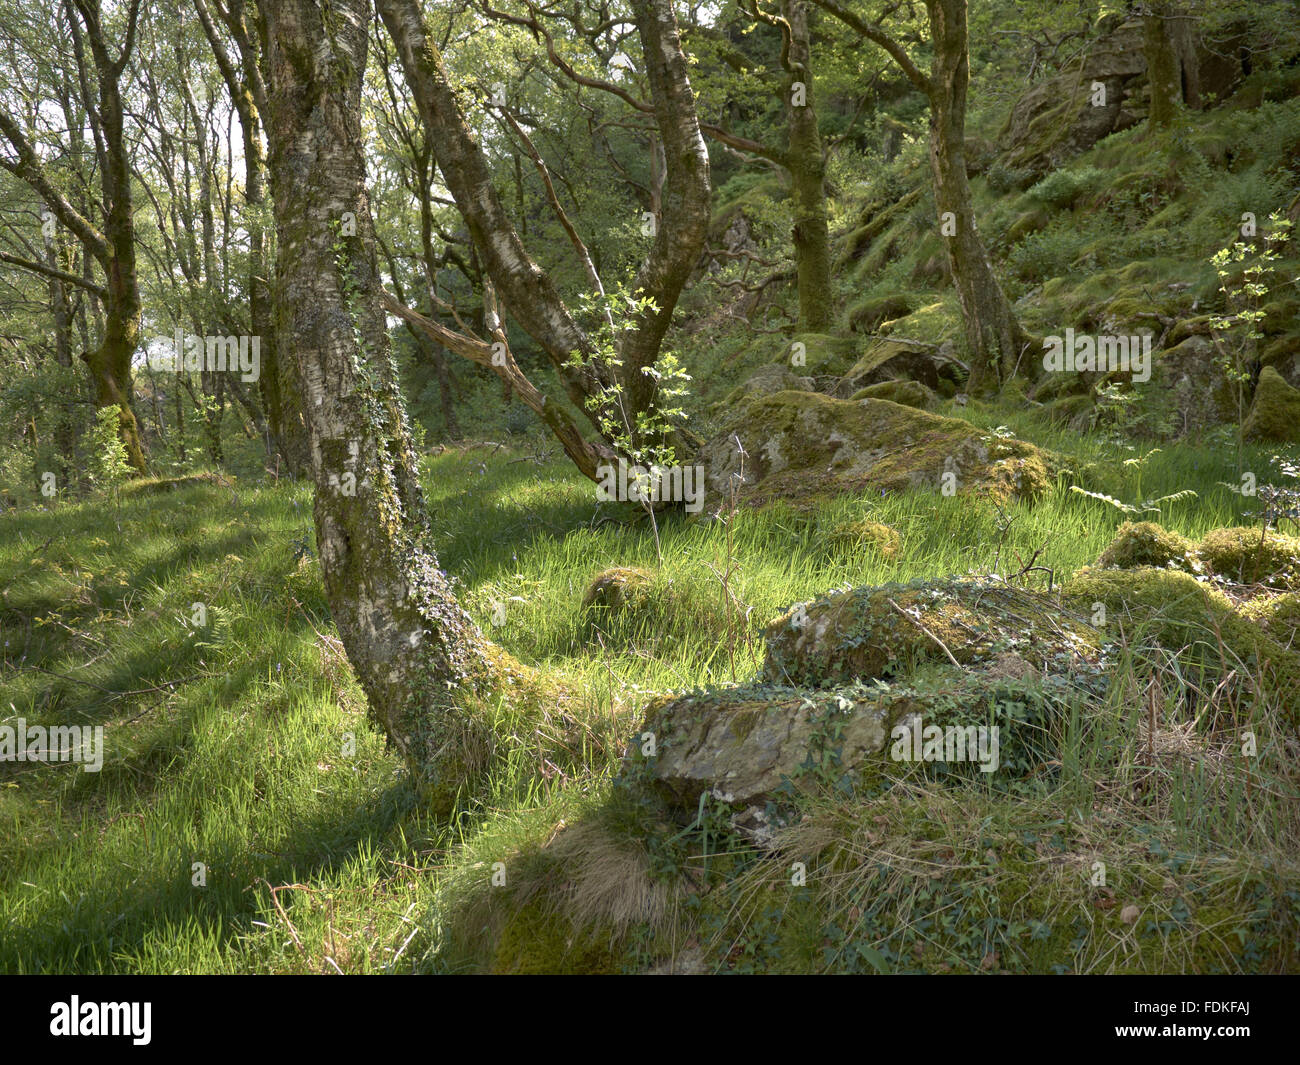 Trees on Llyndy Isaf, an estate of 600 acres in Snowdonia, in the Nant Gwynant valley near Beddgelert, Gwynedd, Wales. Stock Photo